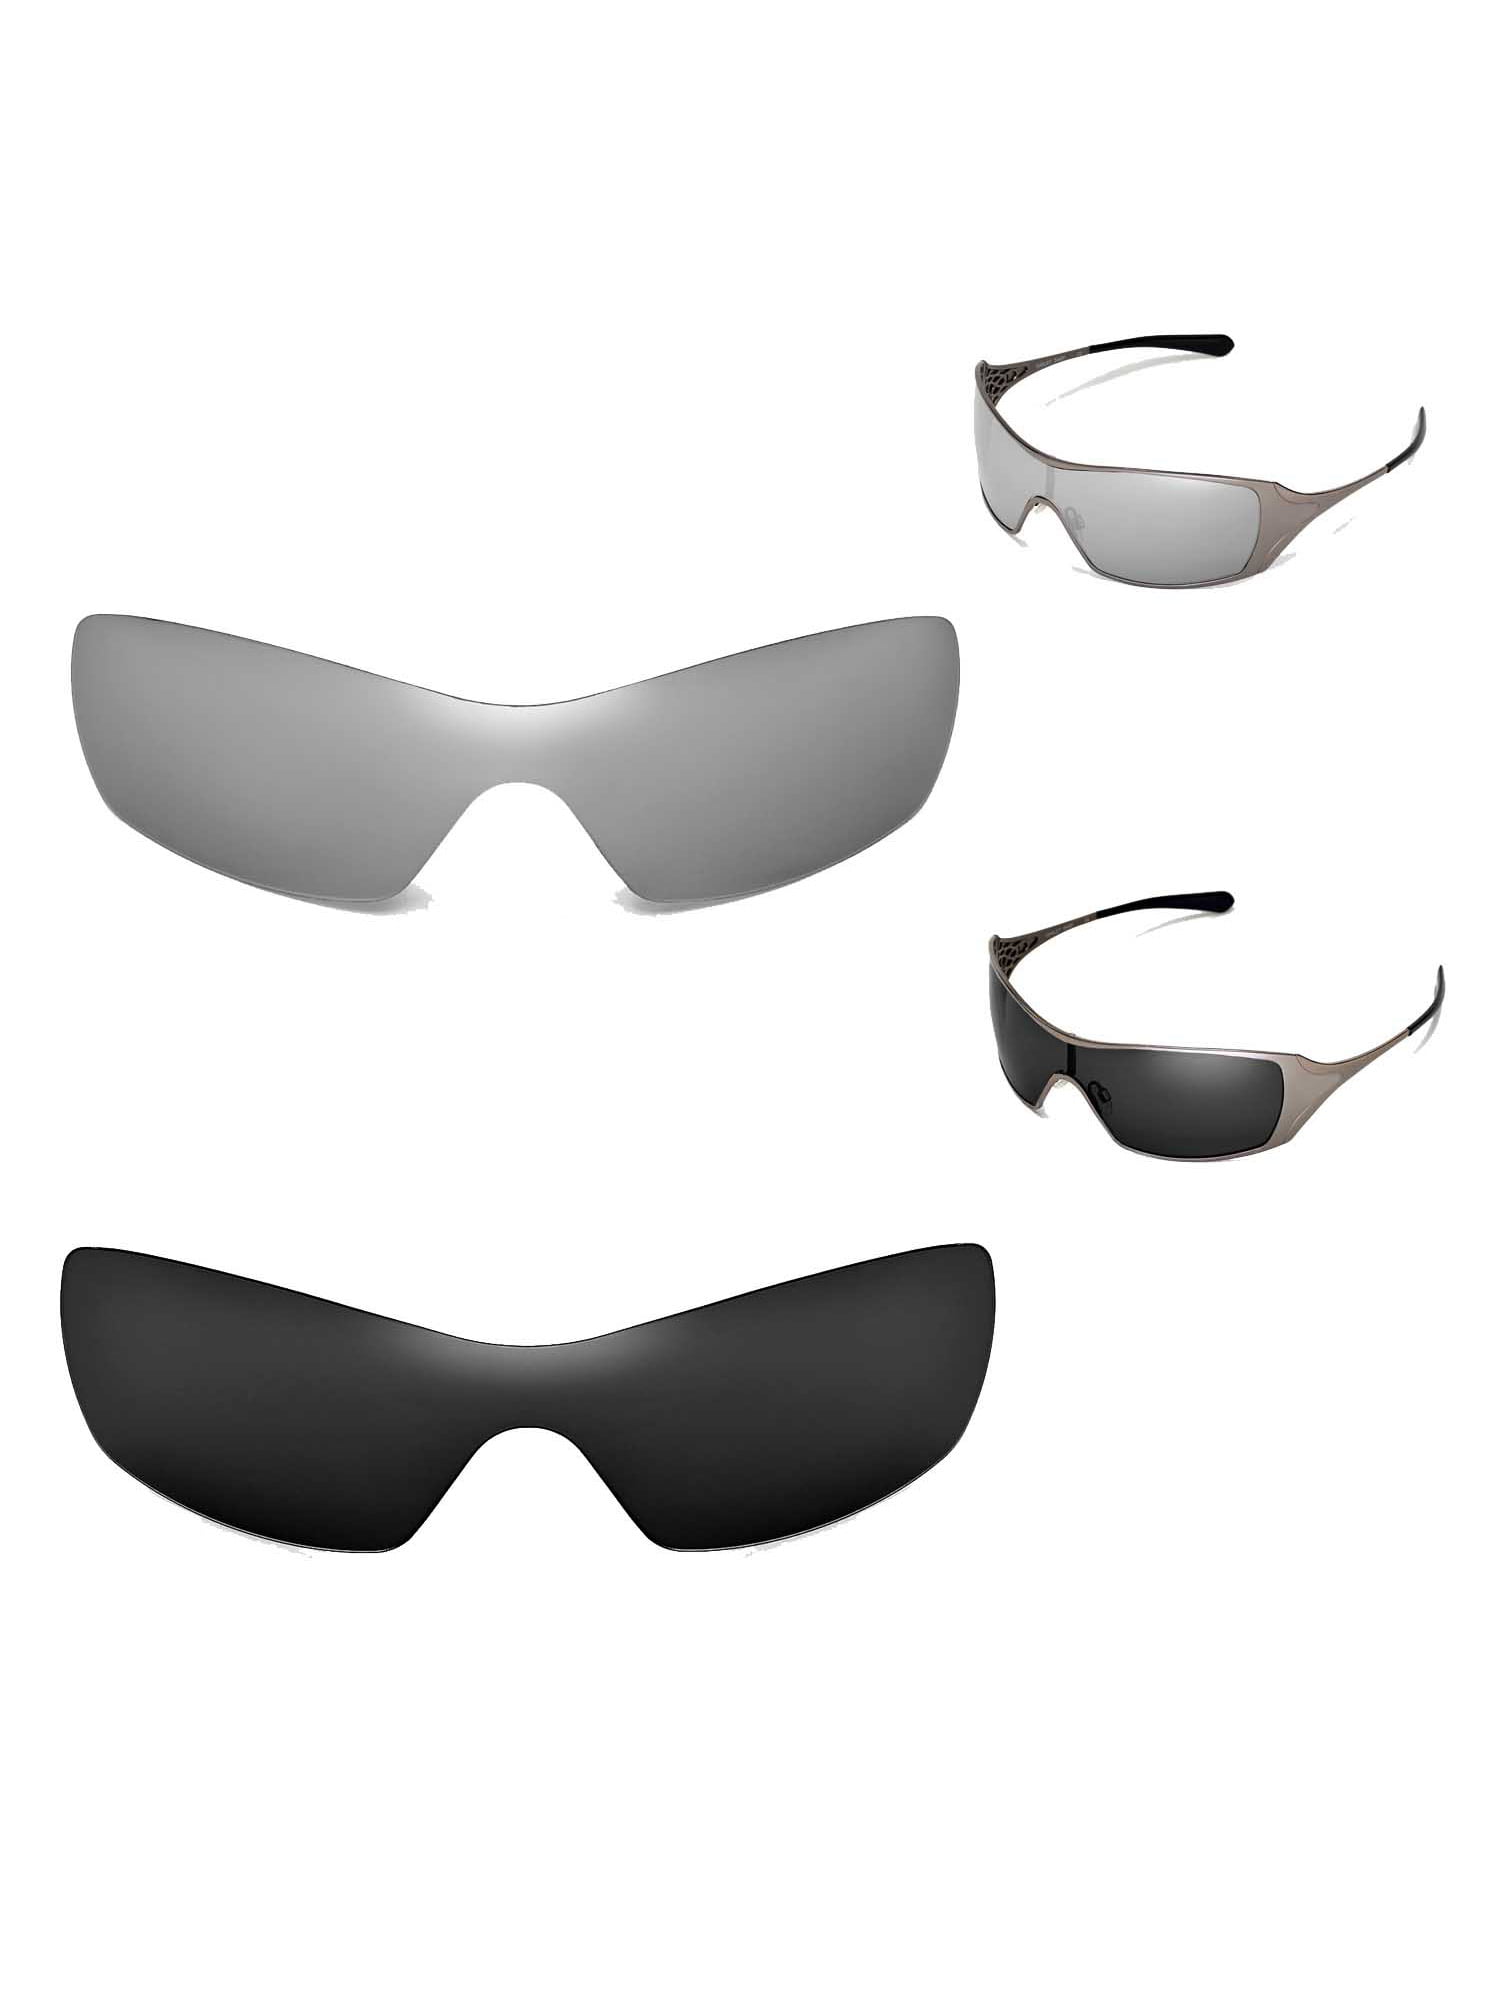 Walleva Polarized Titanium + Black Replacement Lenses For Dart Sunglasses -